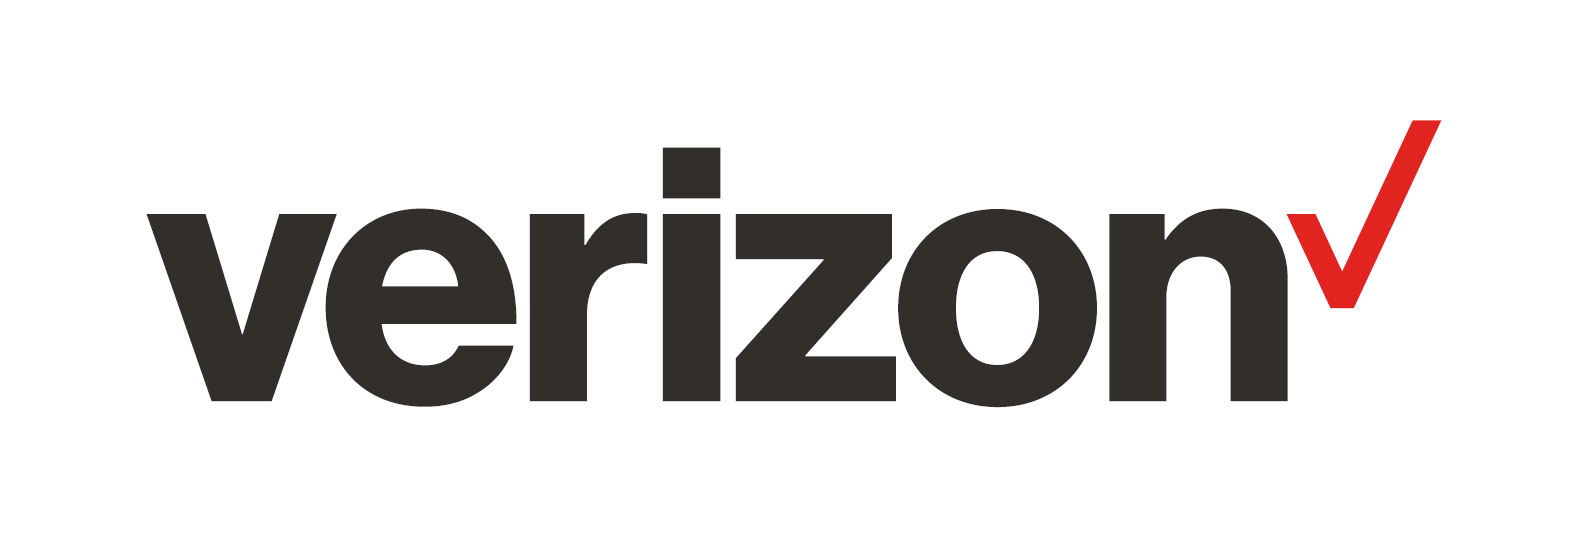 Verizon Wireless - A Wireless logo